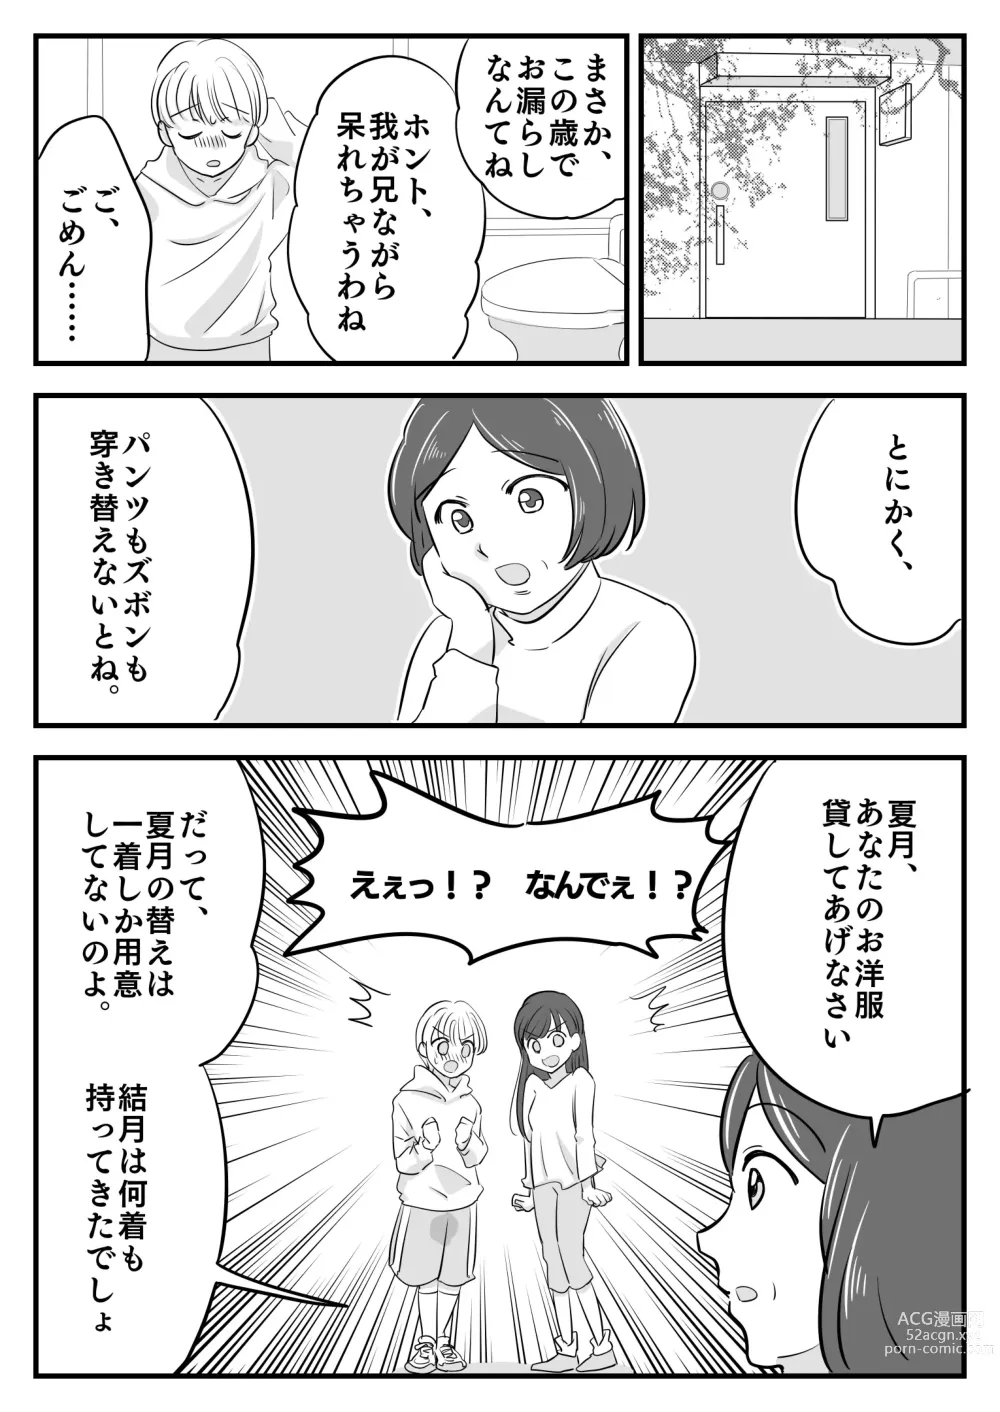 Page 4 of doujinshi Boku no Omutsu Kazoku Ryokou